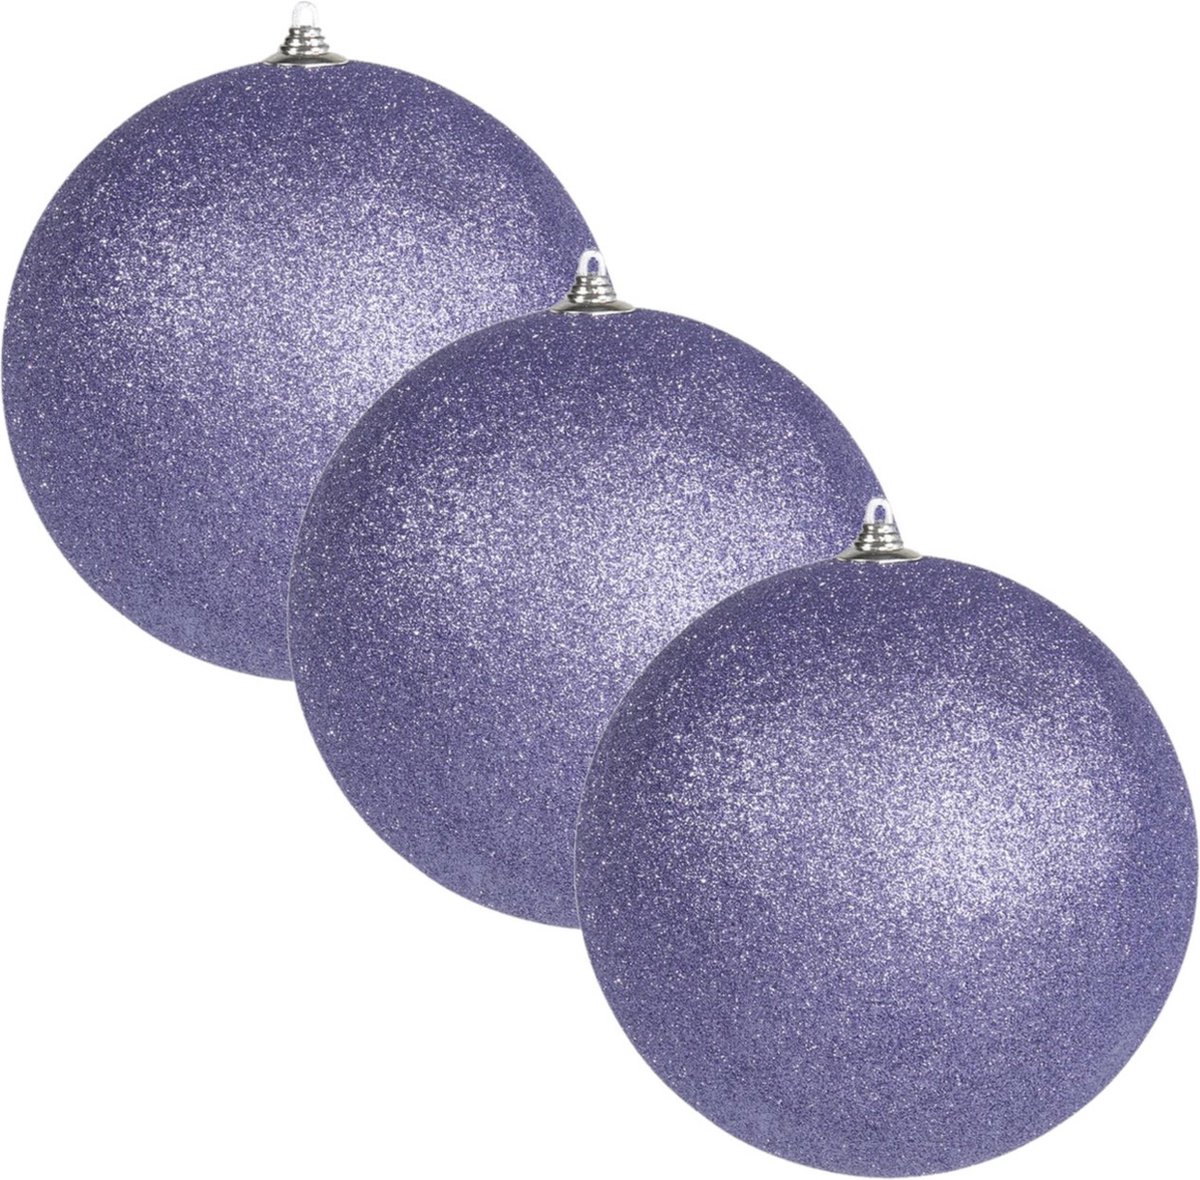 6x Paarse grote glitter kerstballen 13,5 cm - hangdecoratie / boomversiering glitter kerstballen